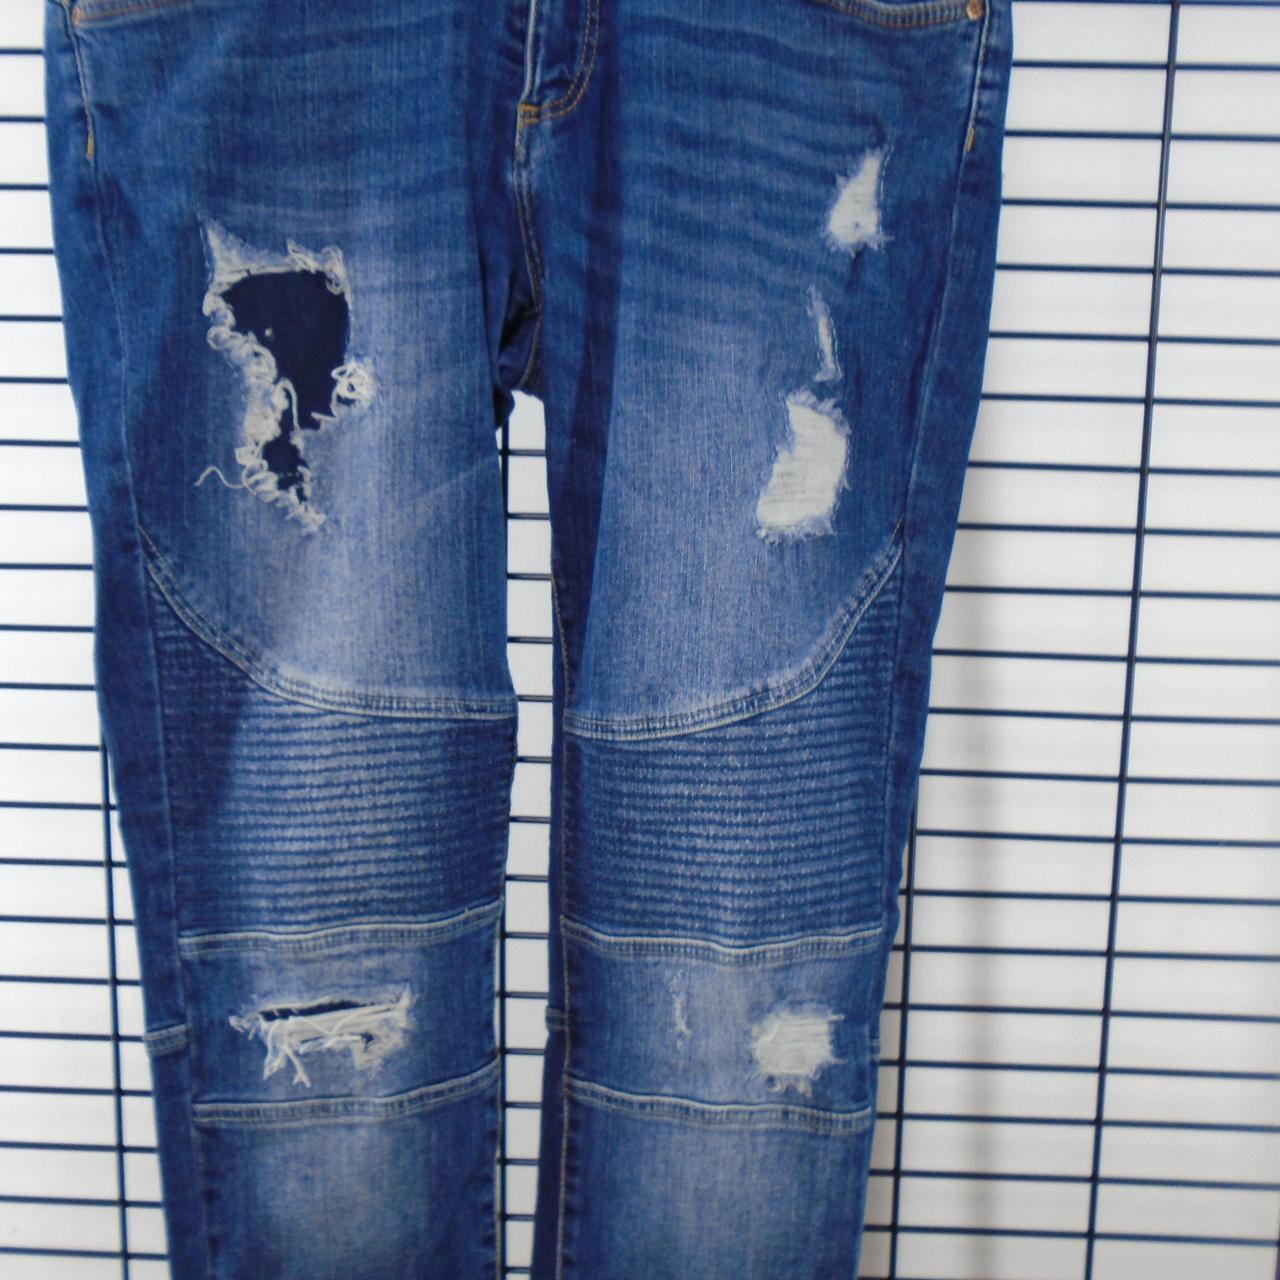 Women's Jeans inside. Dark blue. XL. Used. Good